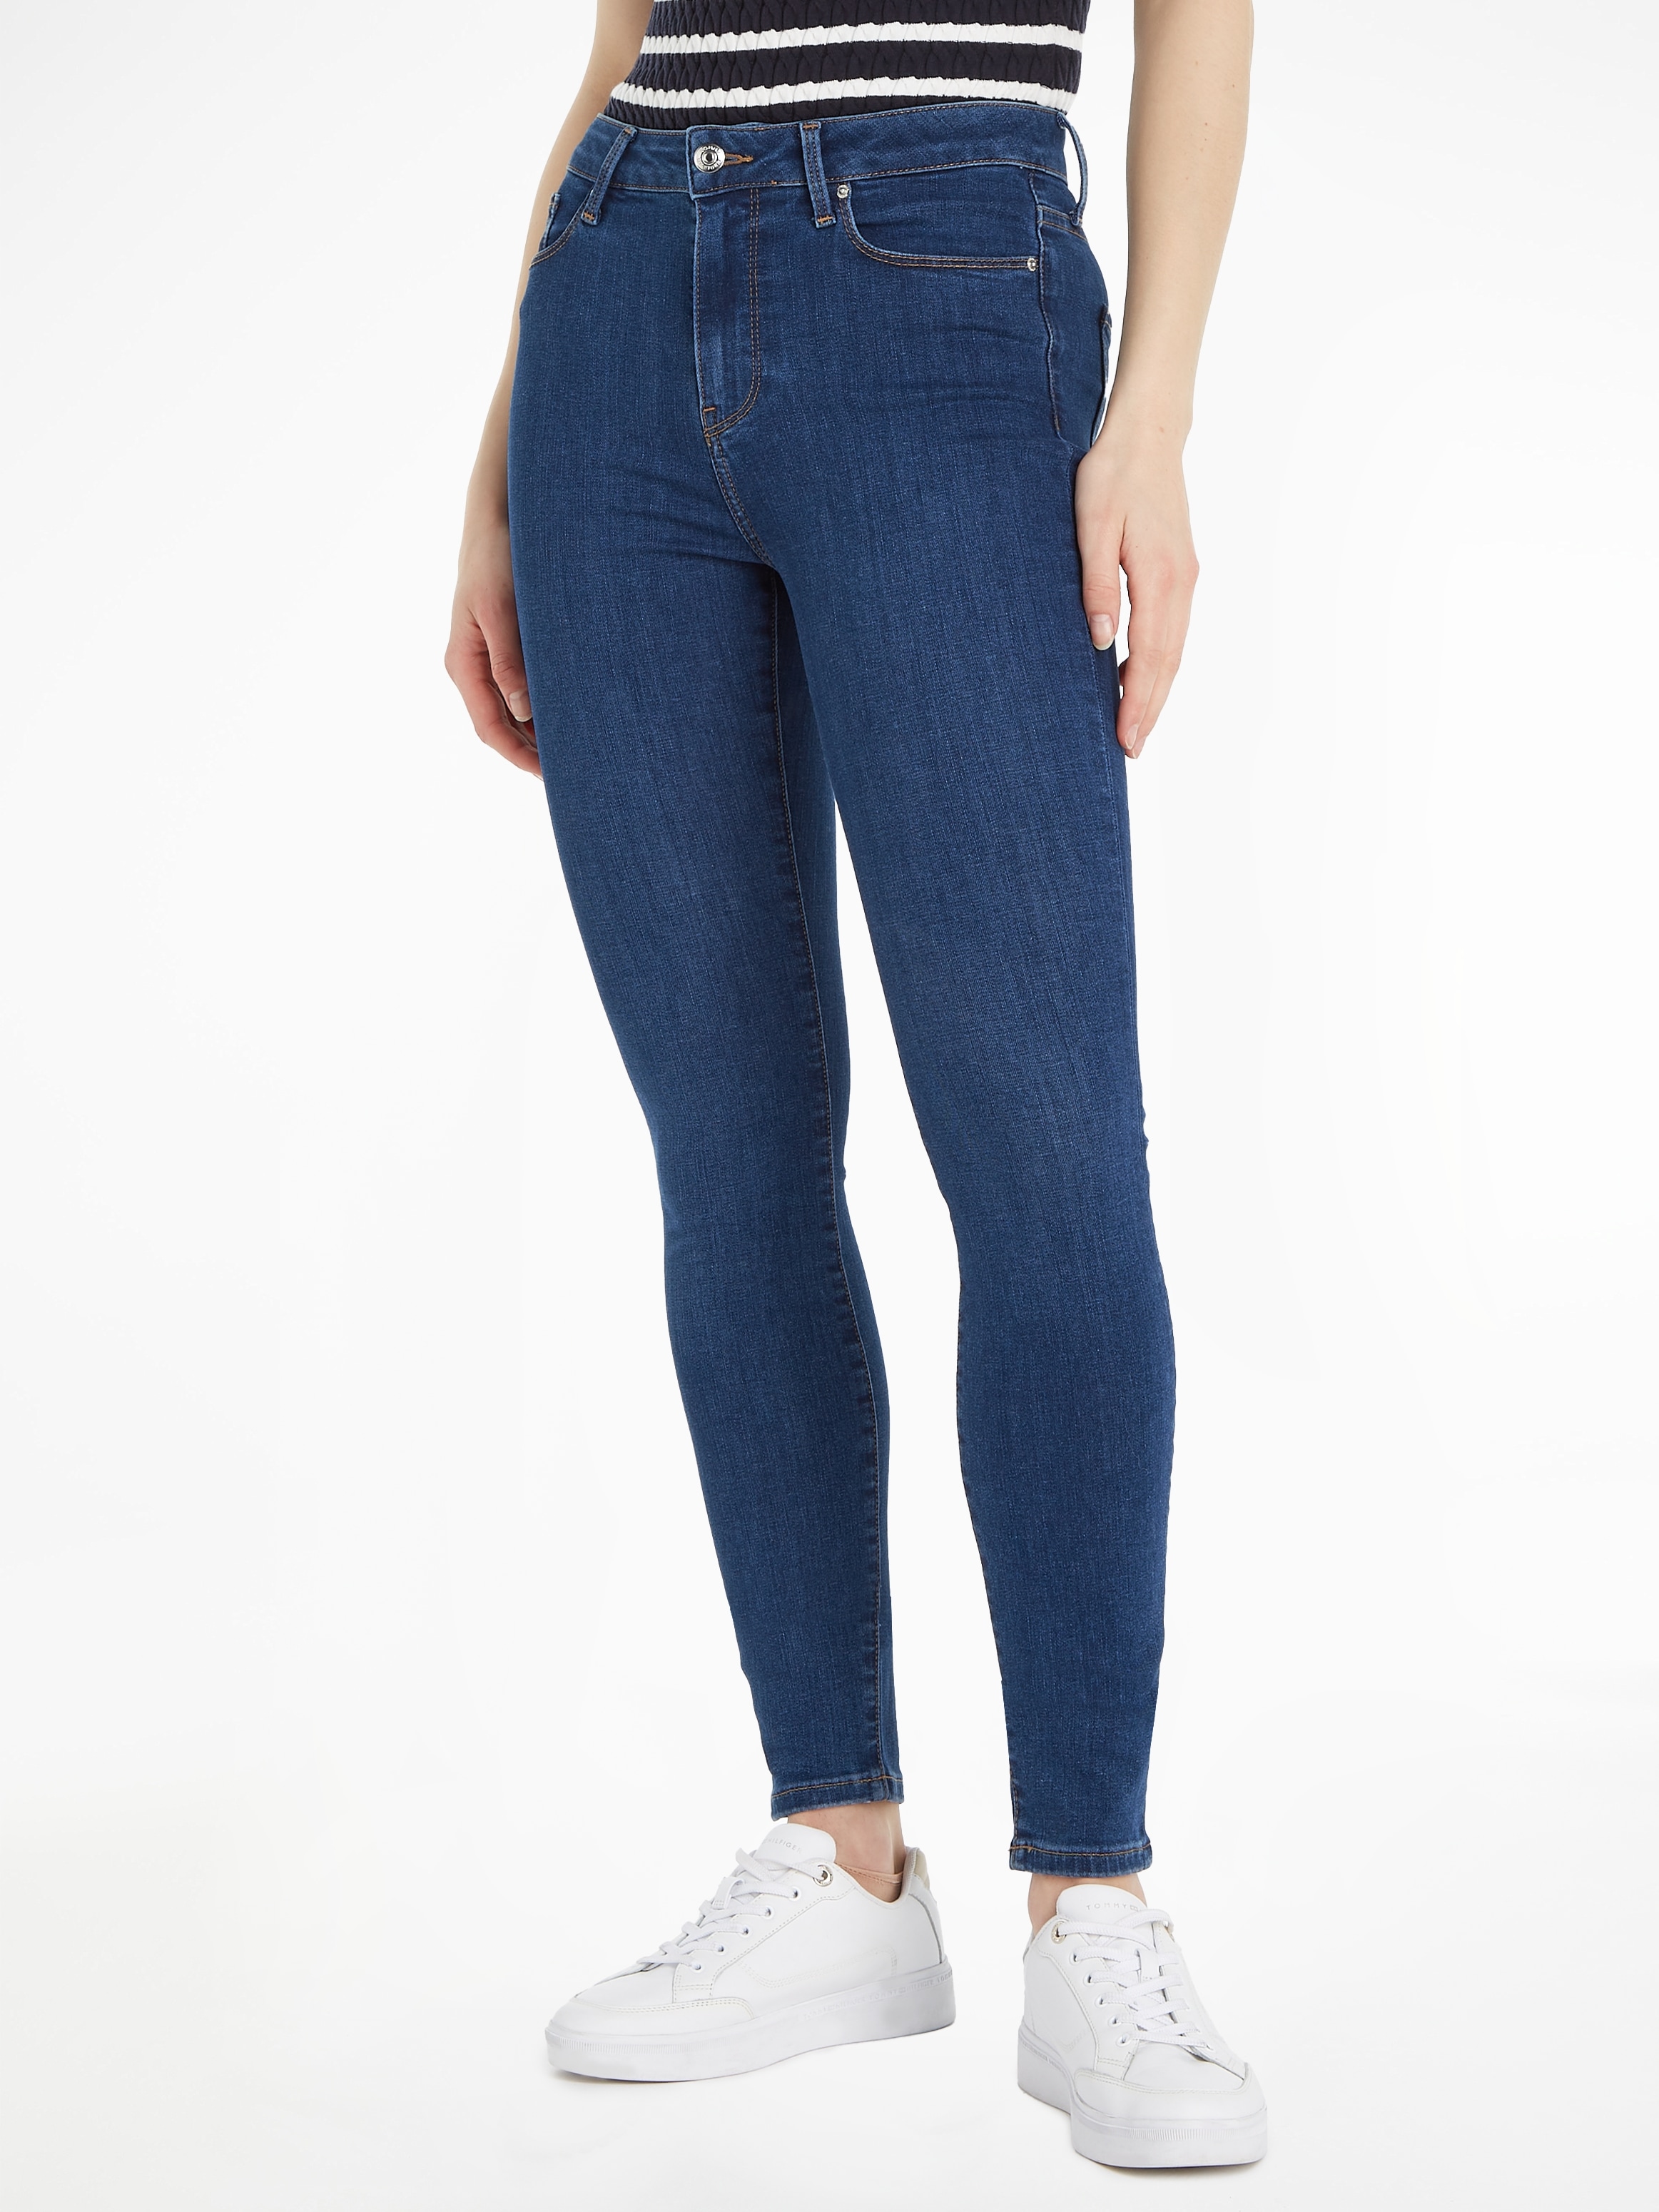 Tommy Hilfiger Jeans für Damen kaufen ▷ Damenjeans | BAUR